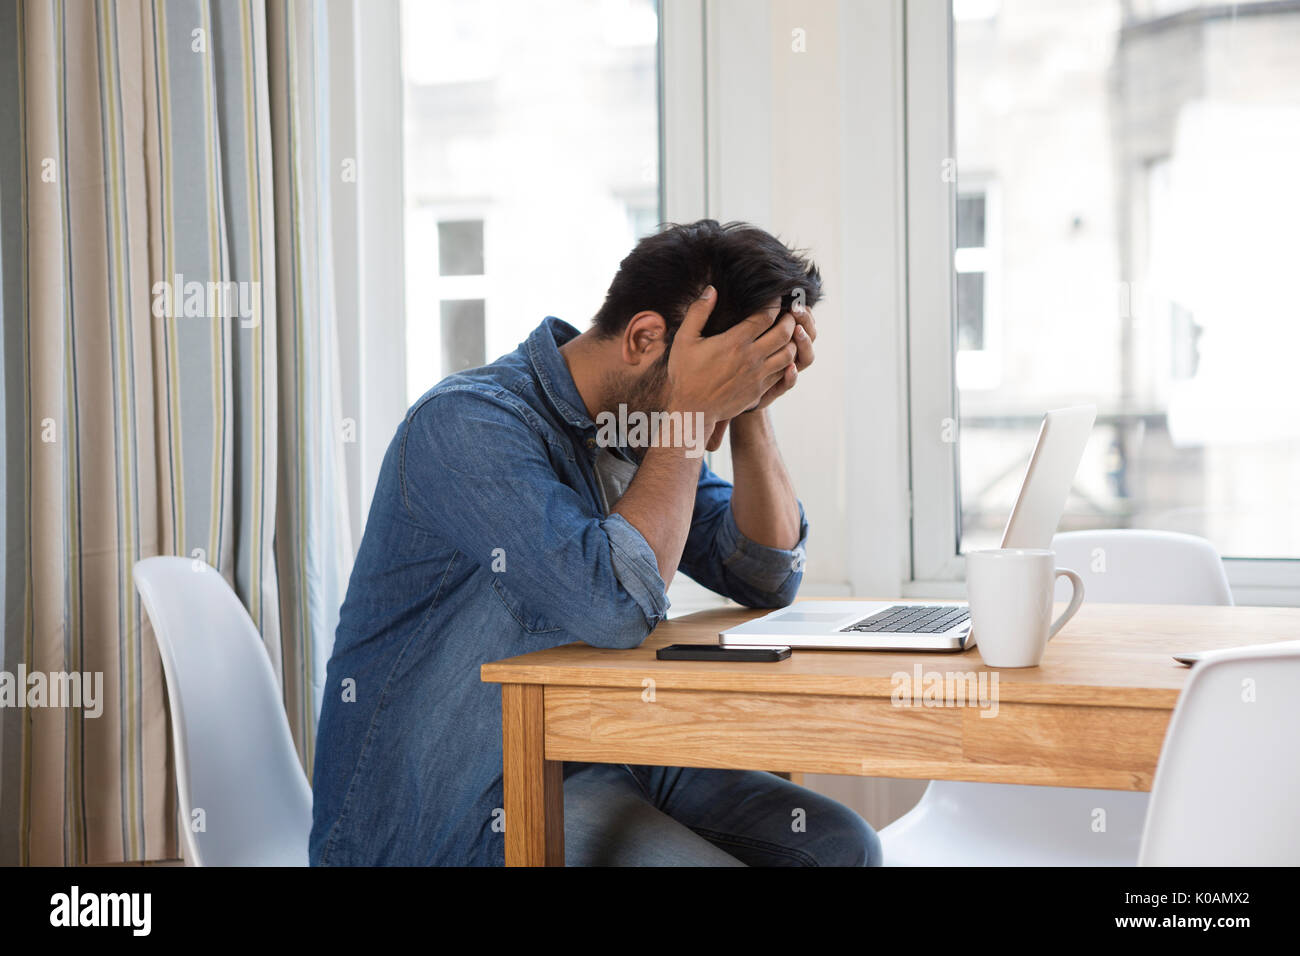 Estresado y frustrado hombre asiático sentado en su ordenador portátil. Foto de stock